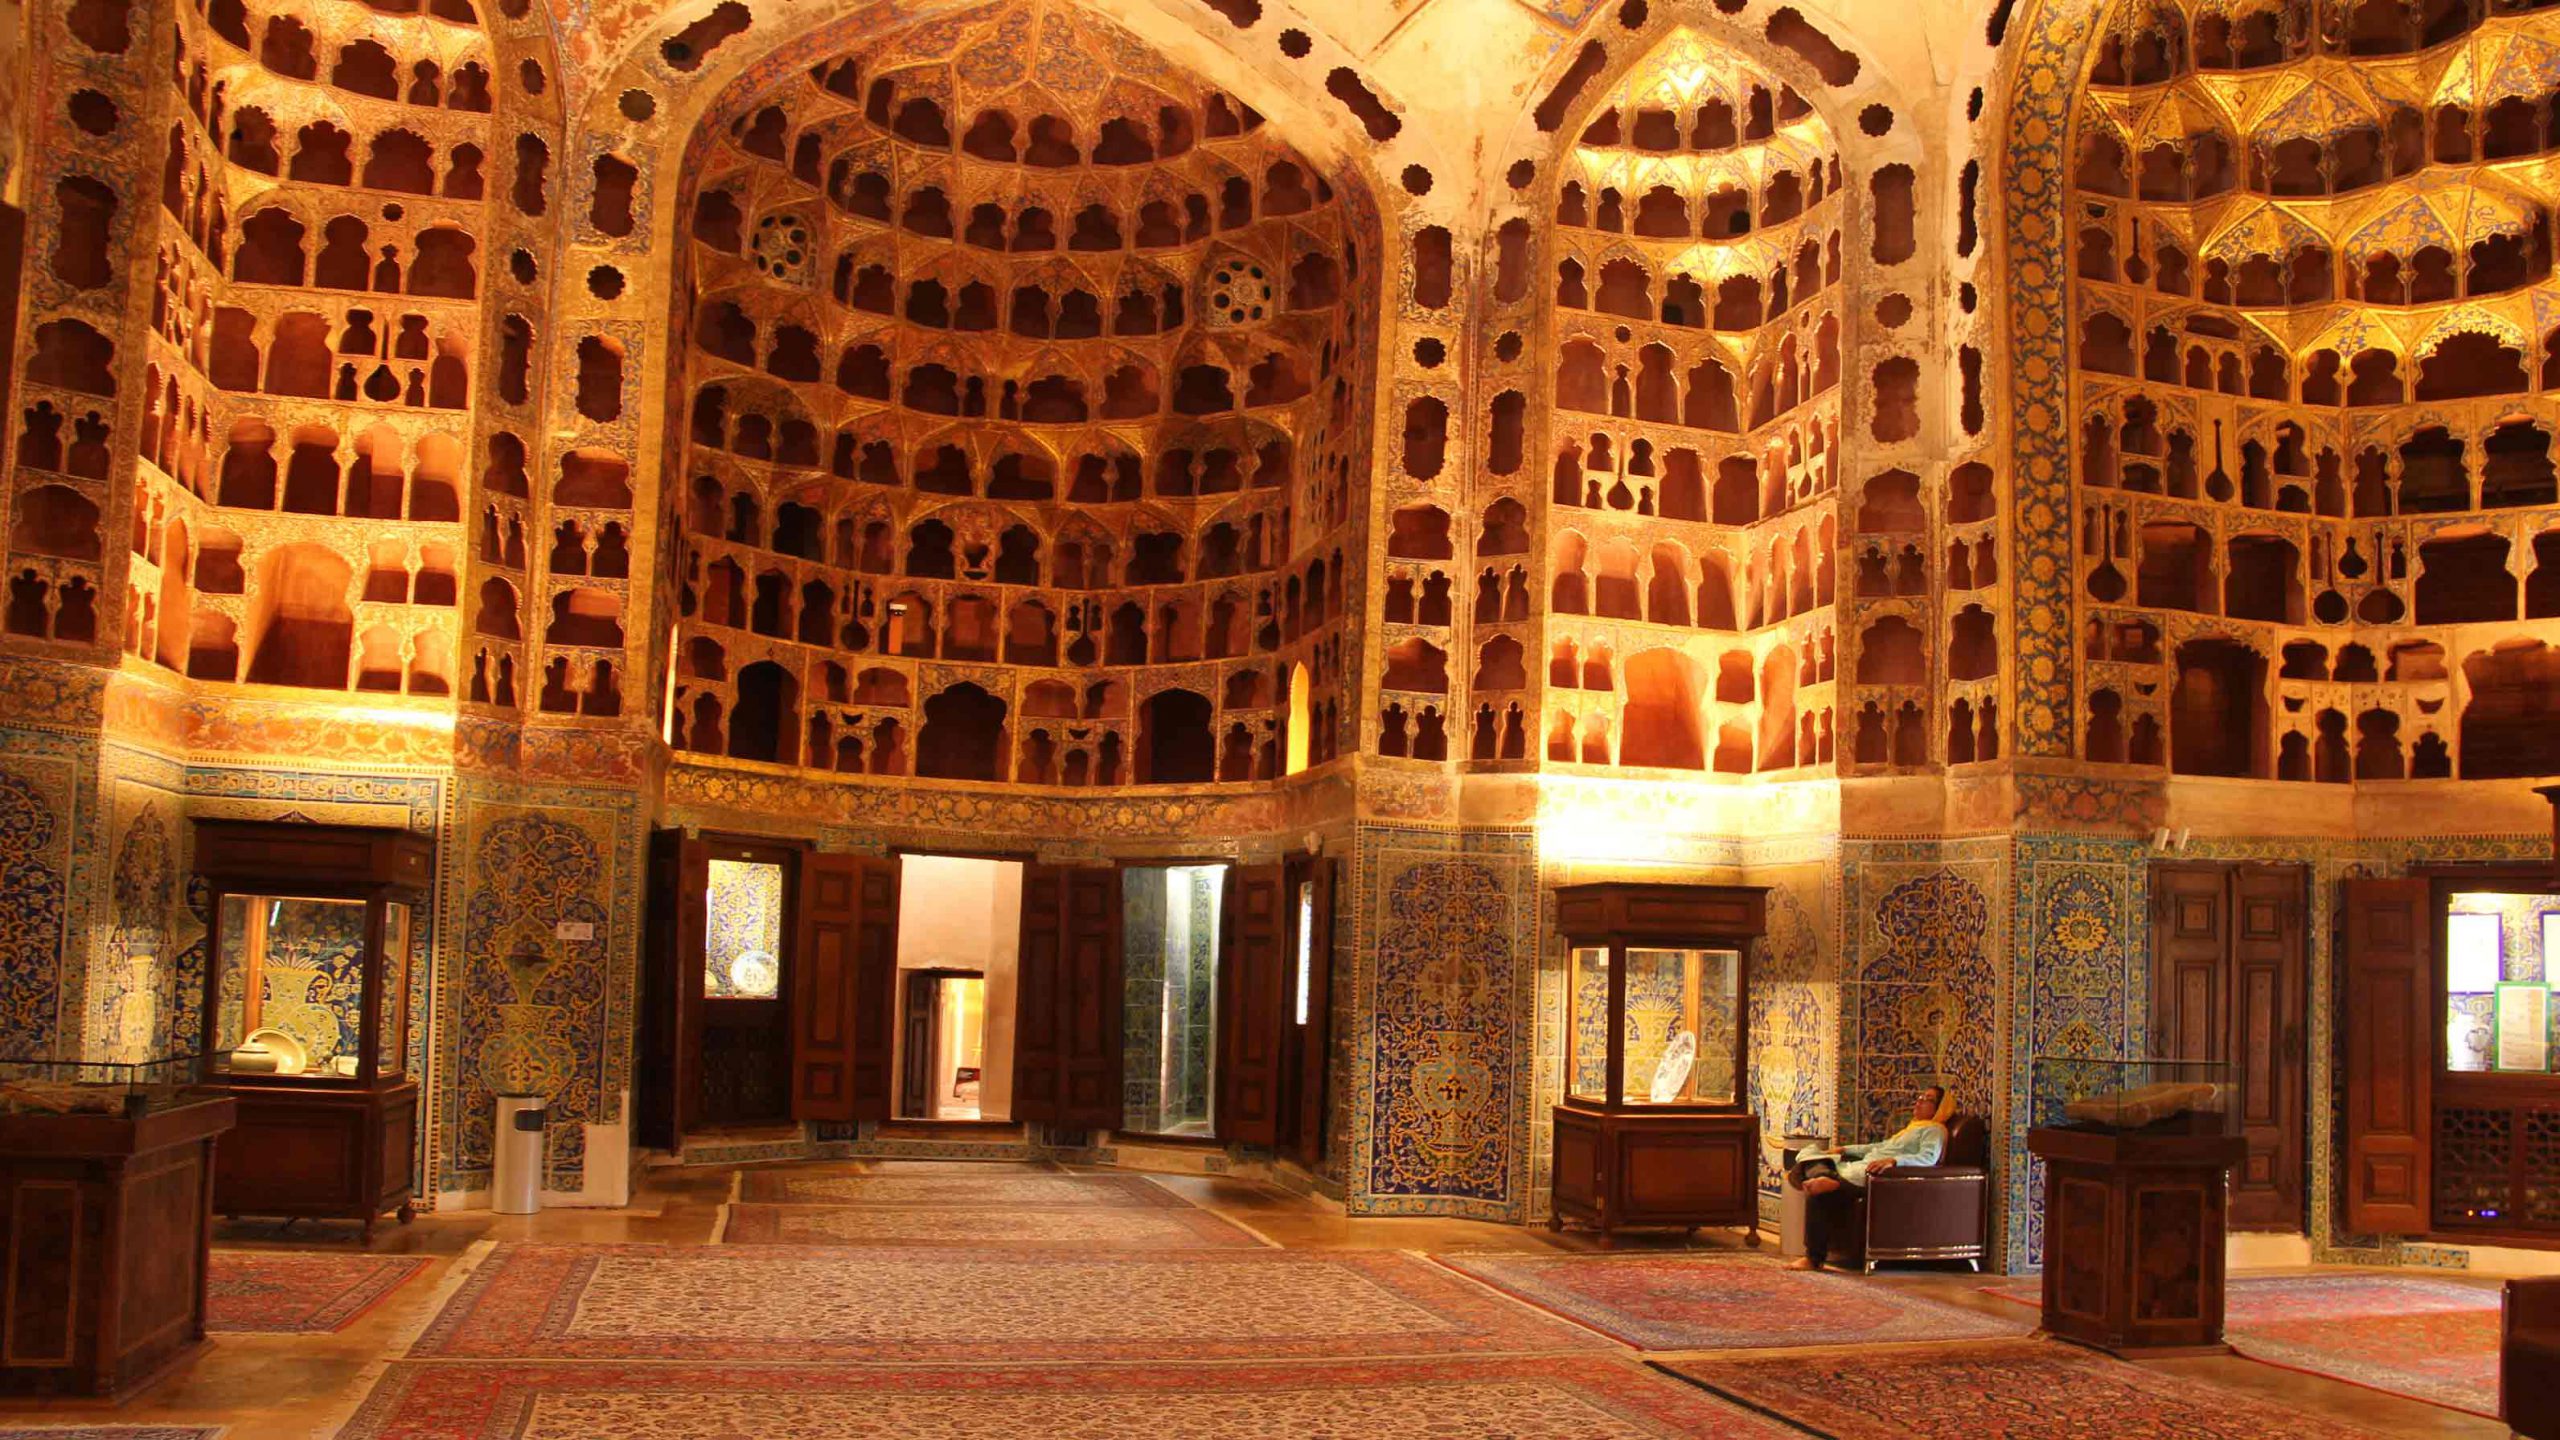 مقبره شیخ صفی الدین اردبیلی, Sheikh Safi Al-Din Ardabili's Shrine